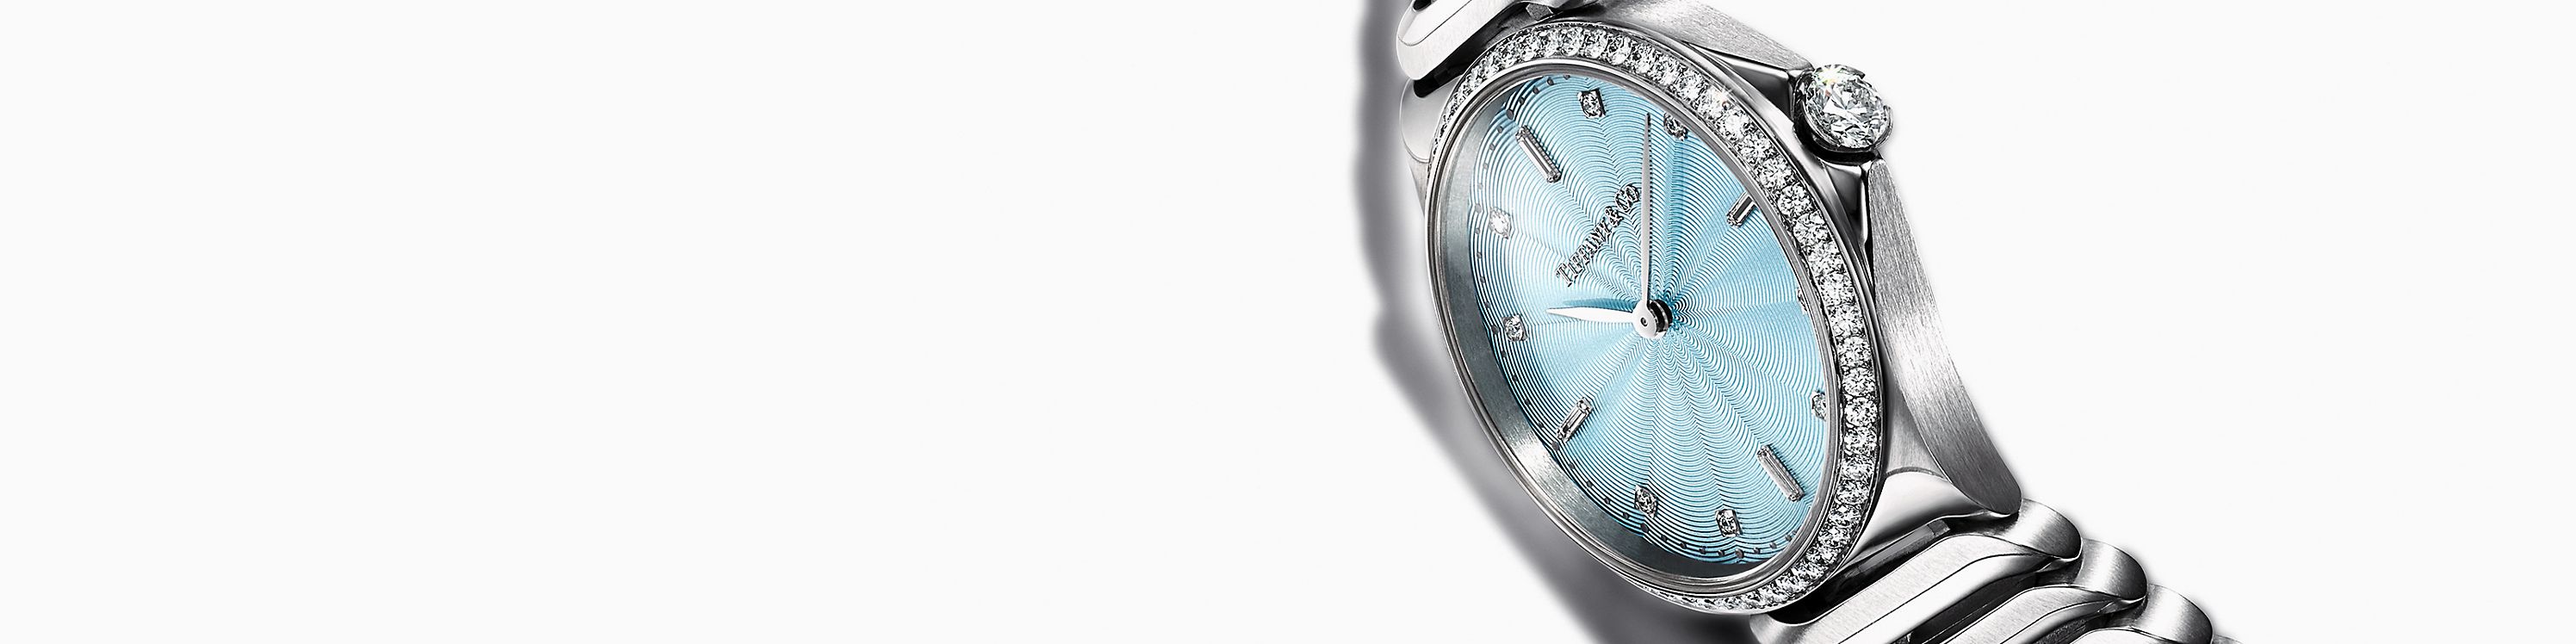 Tiffany & Co. Tiffany Micro Uhren ansehen